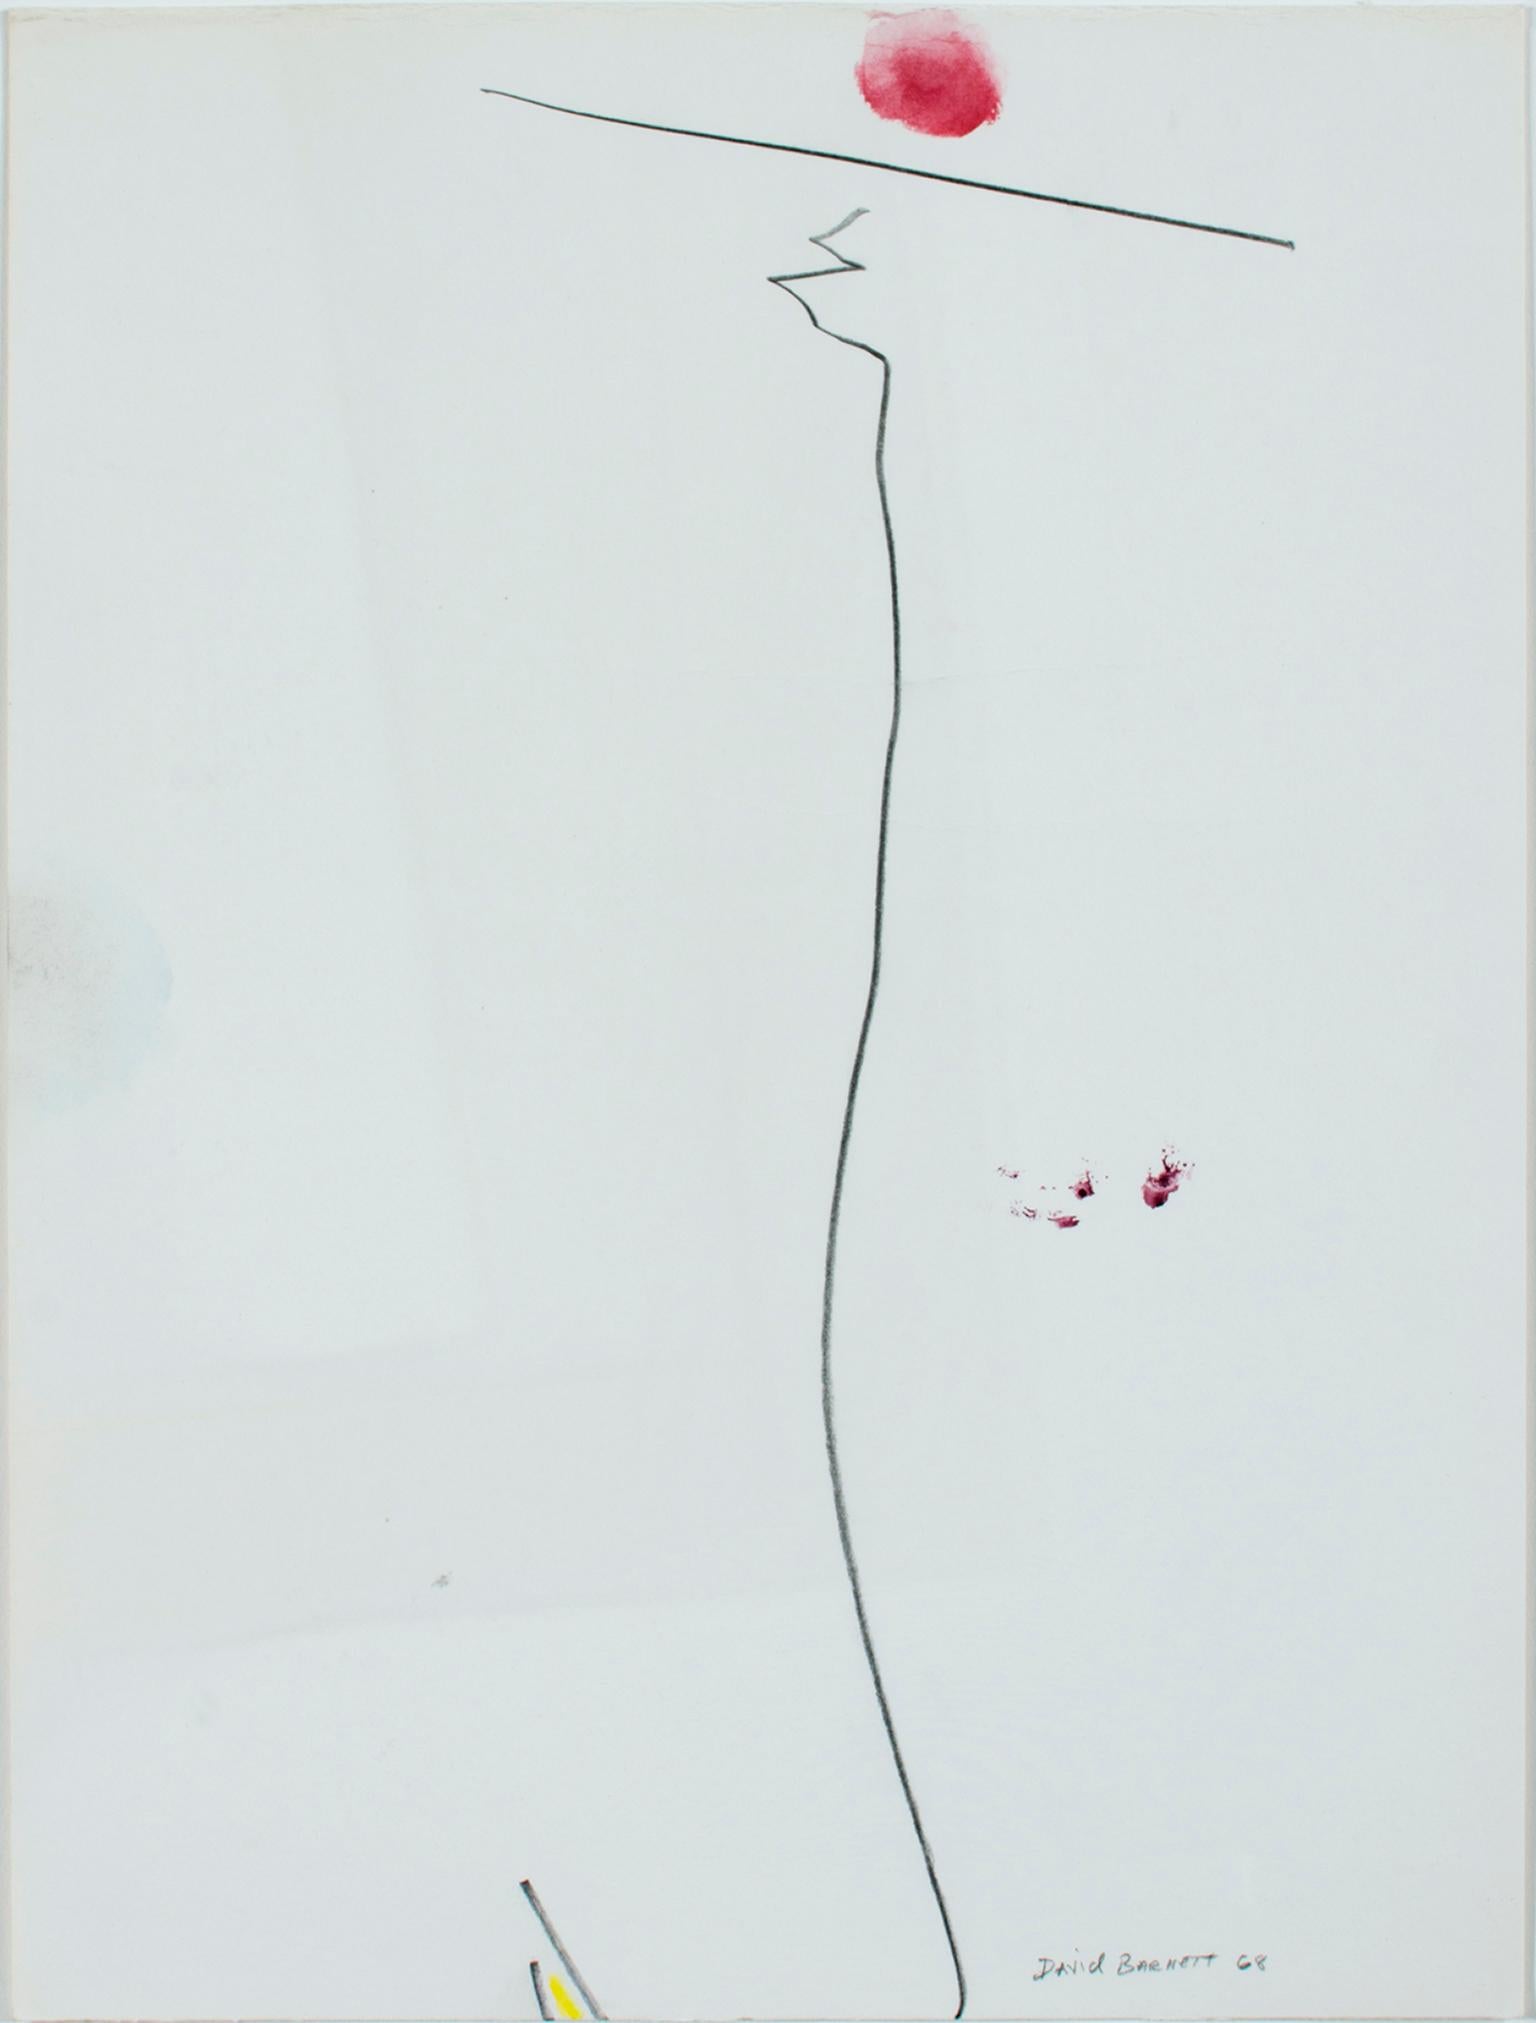 "Spacial Balance" ist eine Serie von vier Aquarell- und Bleistiftarbeiten von David Barnett, die alle mit "David Barnett '68" signiert sind. Jedes ist ein anderes Experiment in Sachen Linie, Farbe und Balance.

Räumliches Gleichgewicht I: 14" x